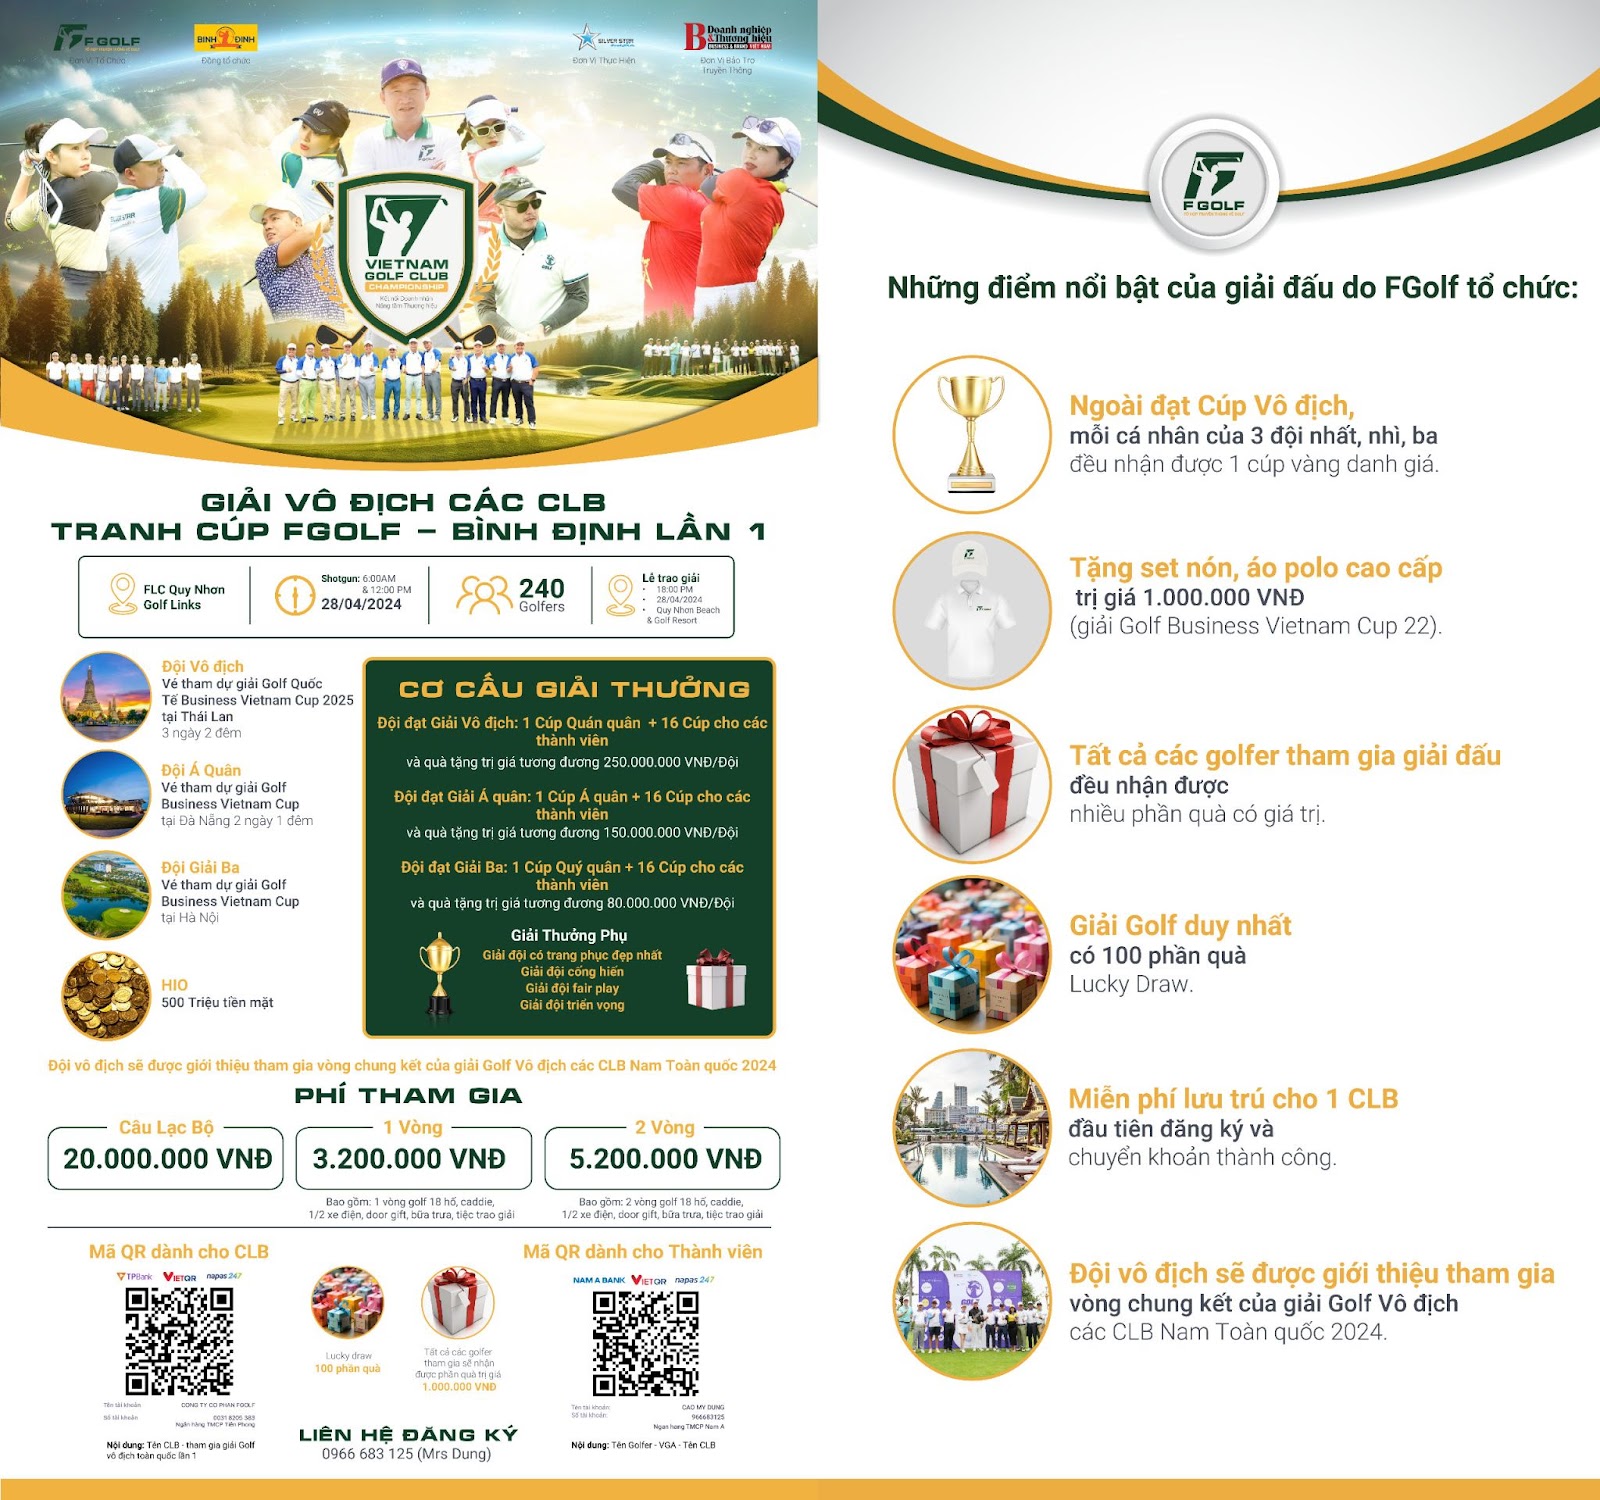 Thông tin cơ cấu giải thưởng của giải Vô địch các CLB tranh cup FGolf - Bình Định lần 1 